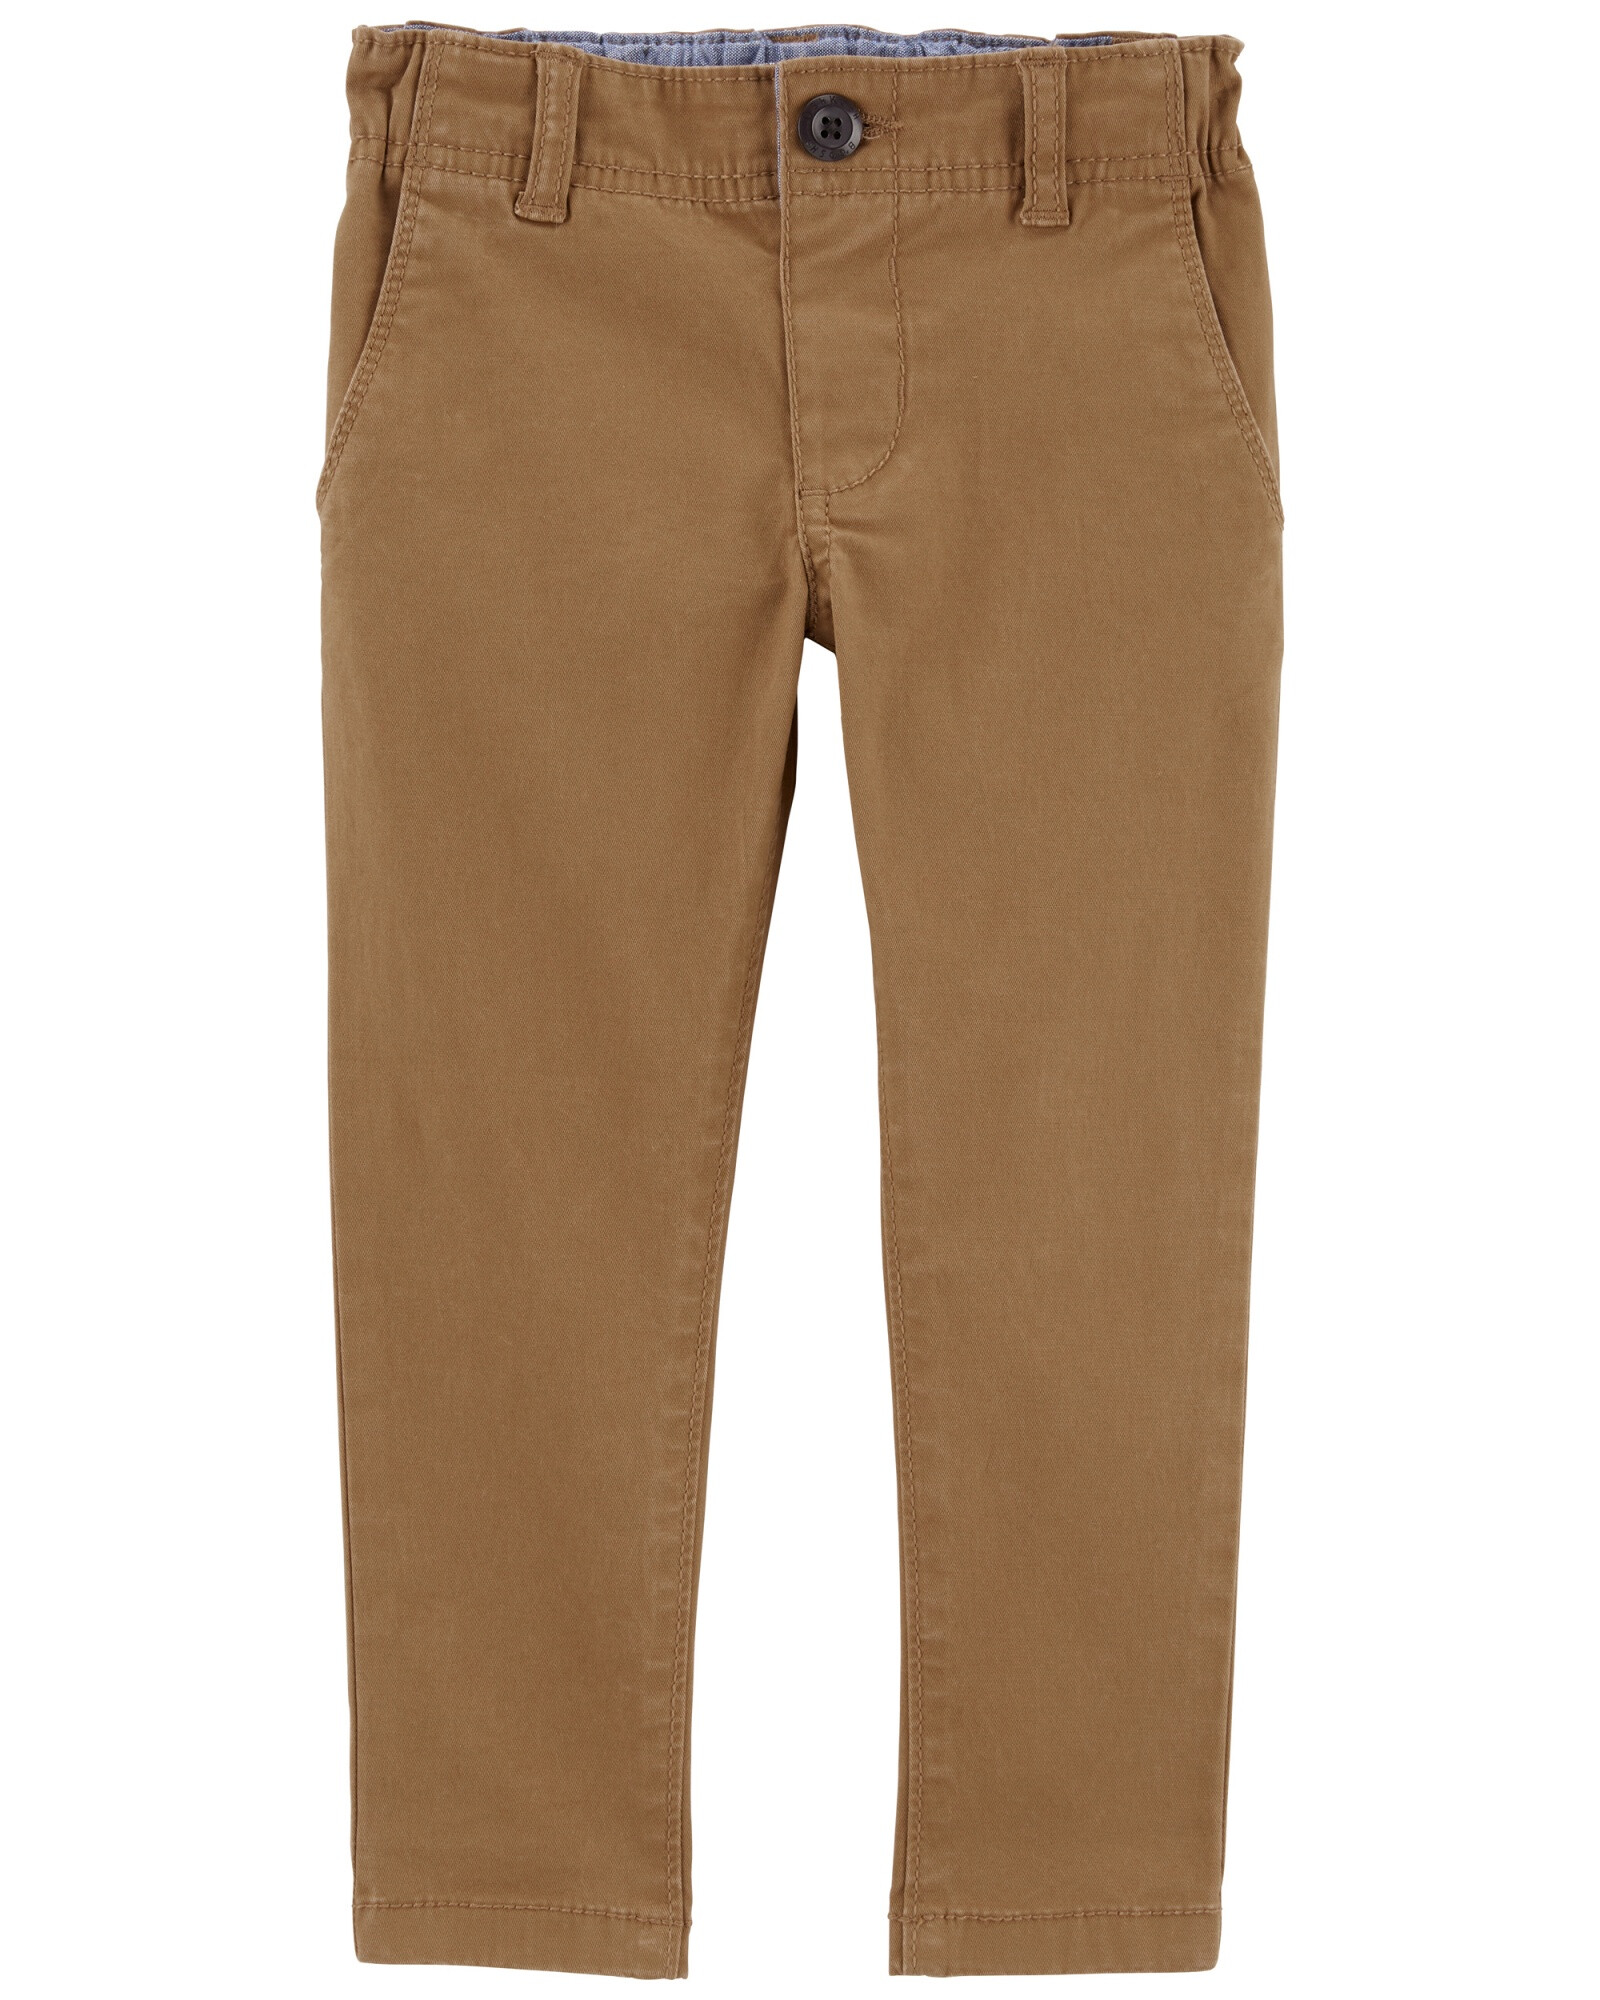 Pantalón de algodón, ajustado, marrón. Talles 2-5T Sin color